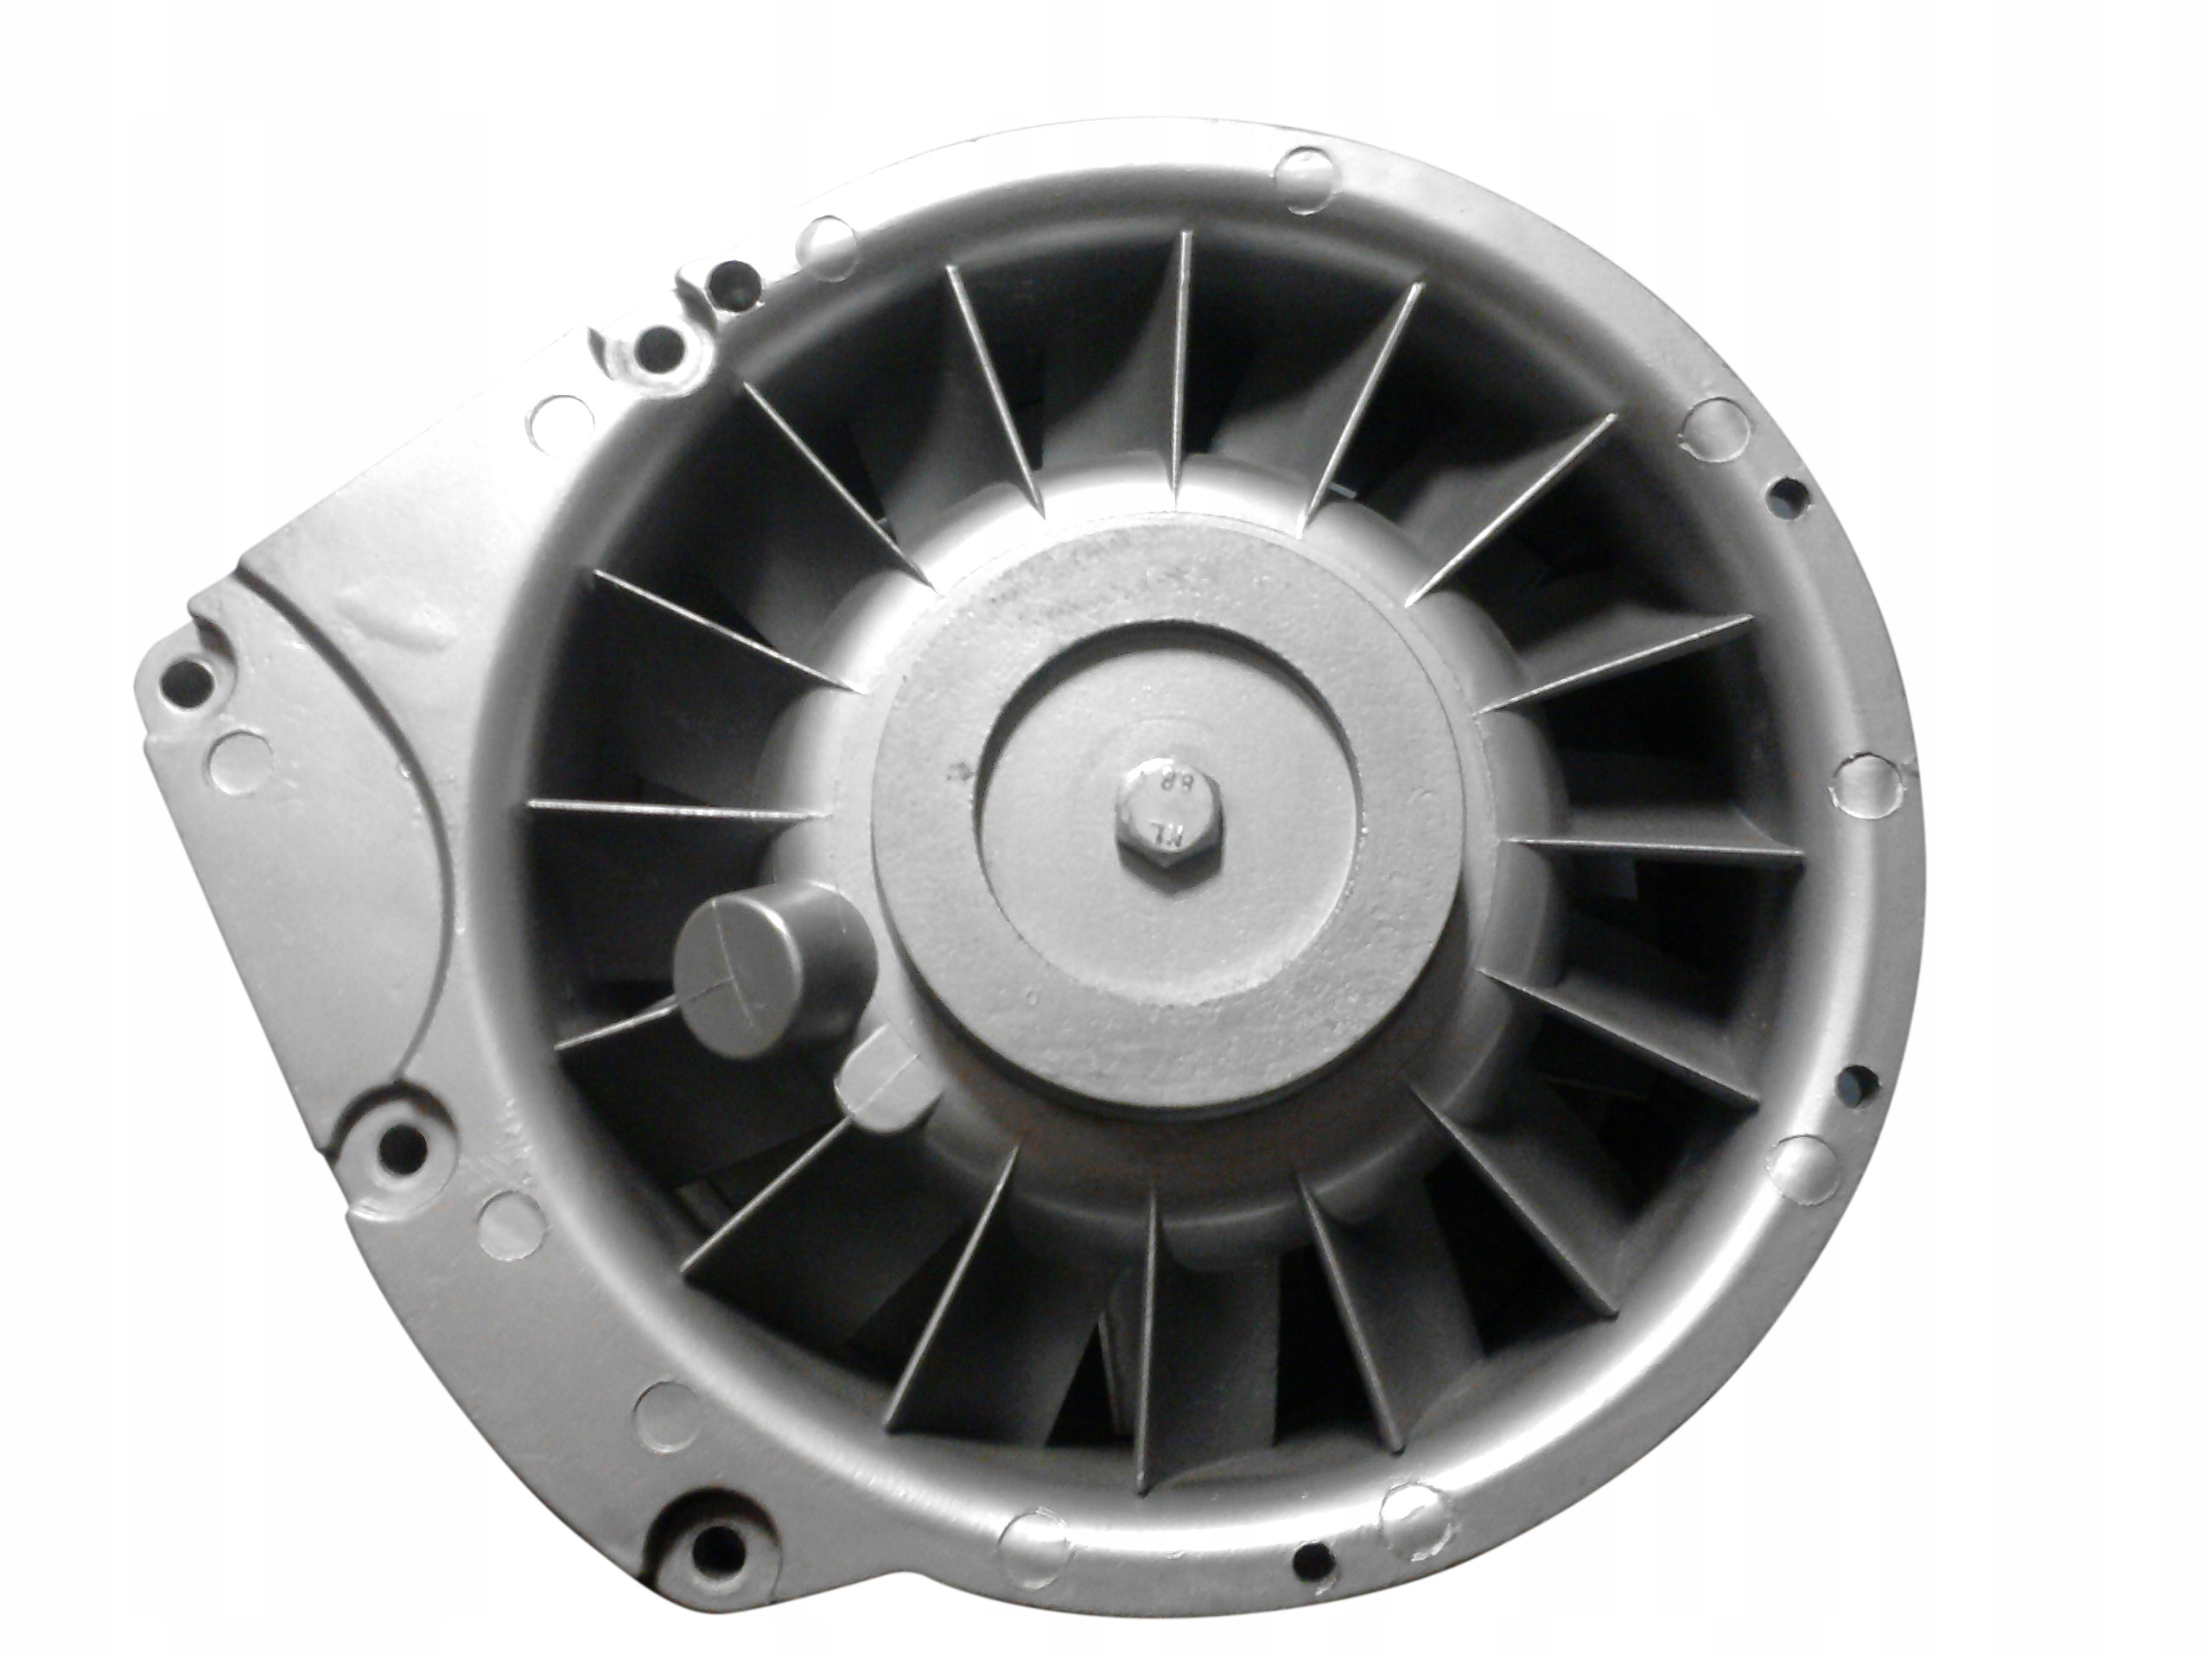 вентилятор двигателя Deutz bf6l913